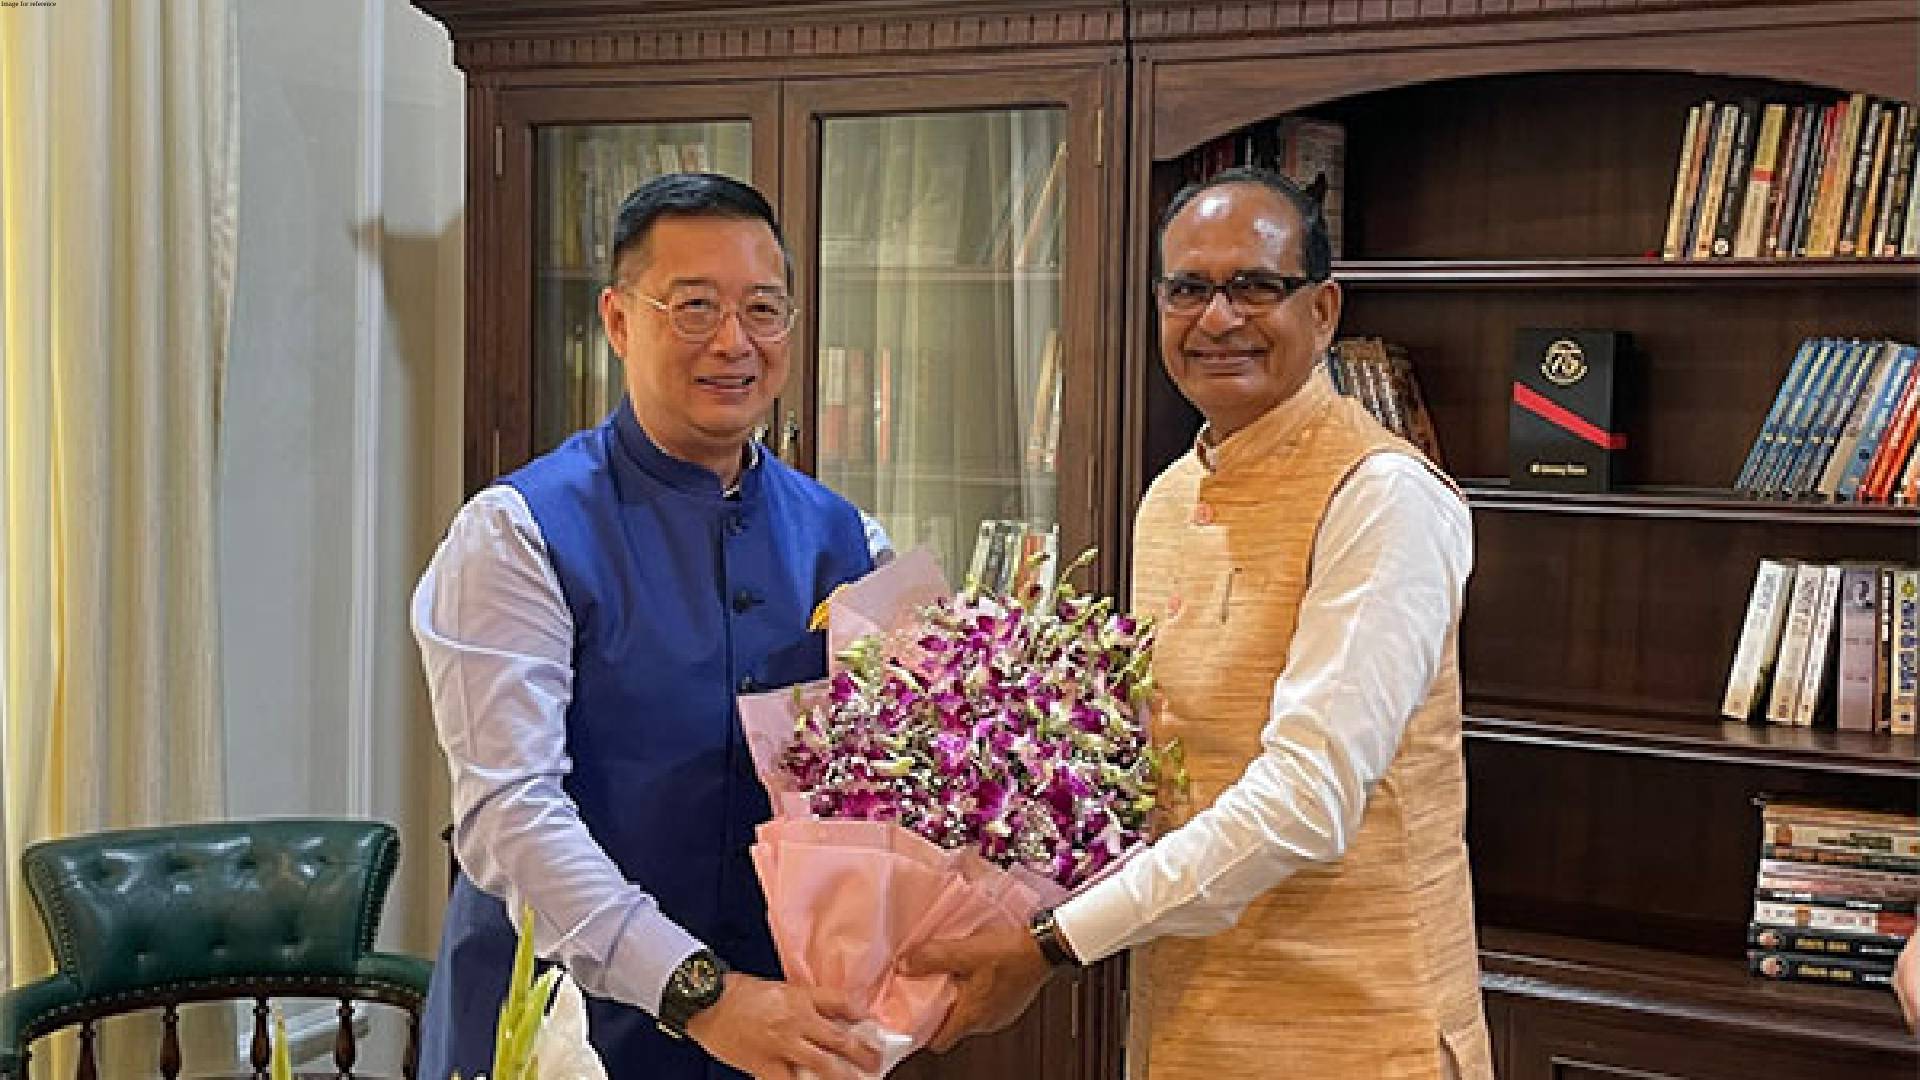 Singapore envoy Simon Wong meets former MP CM Shivraj Singh Chouhan